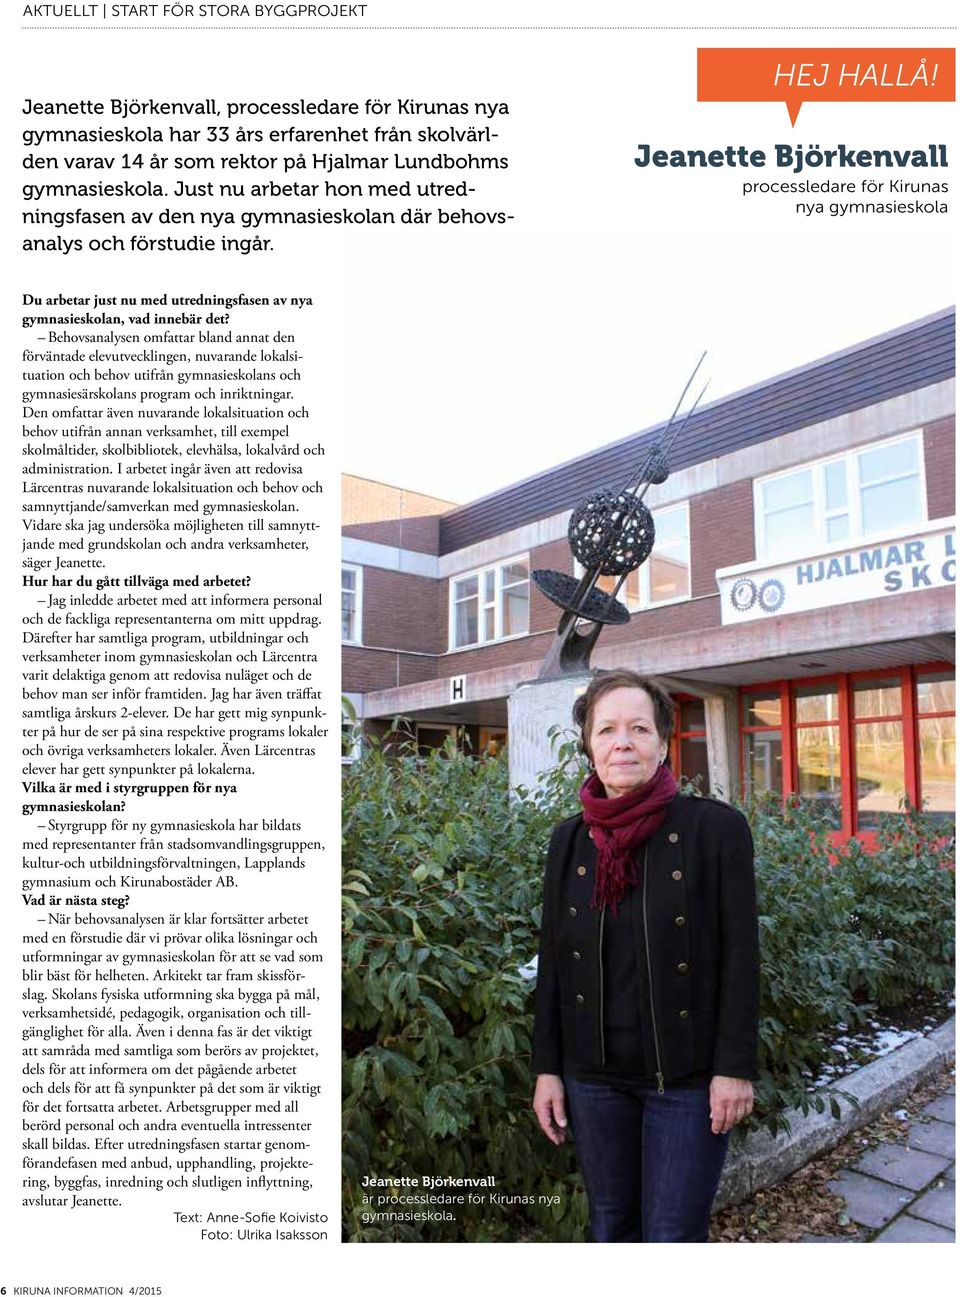 Jeanette Björkenvall processledare för Kirunas nya gymnasieskola Du arbetar just nu med utredningsfasen av nya gymnasieskolan, vad innebär det?